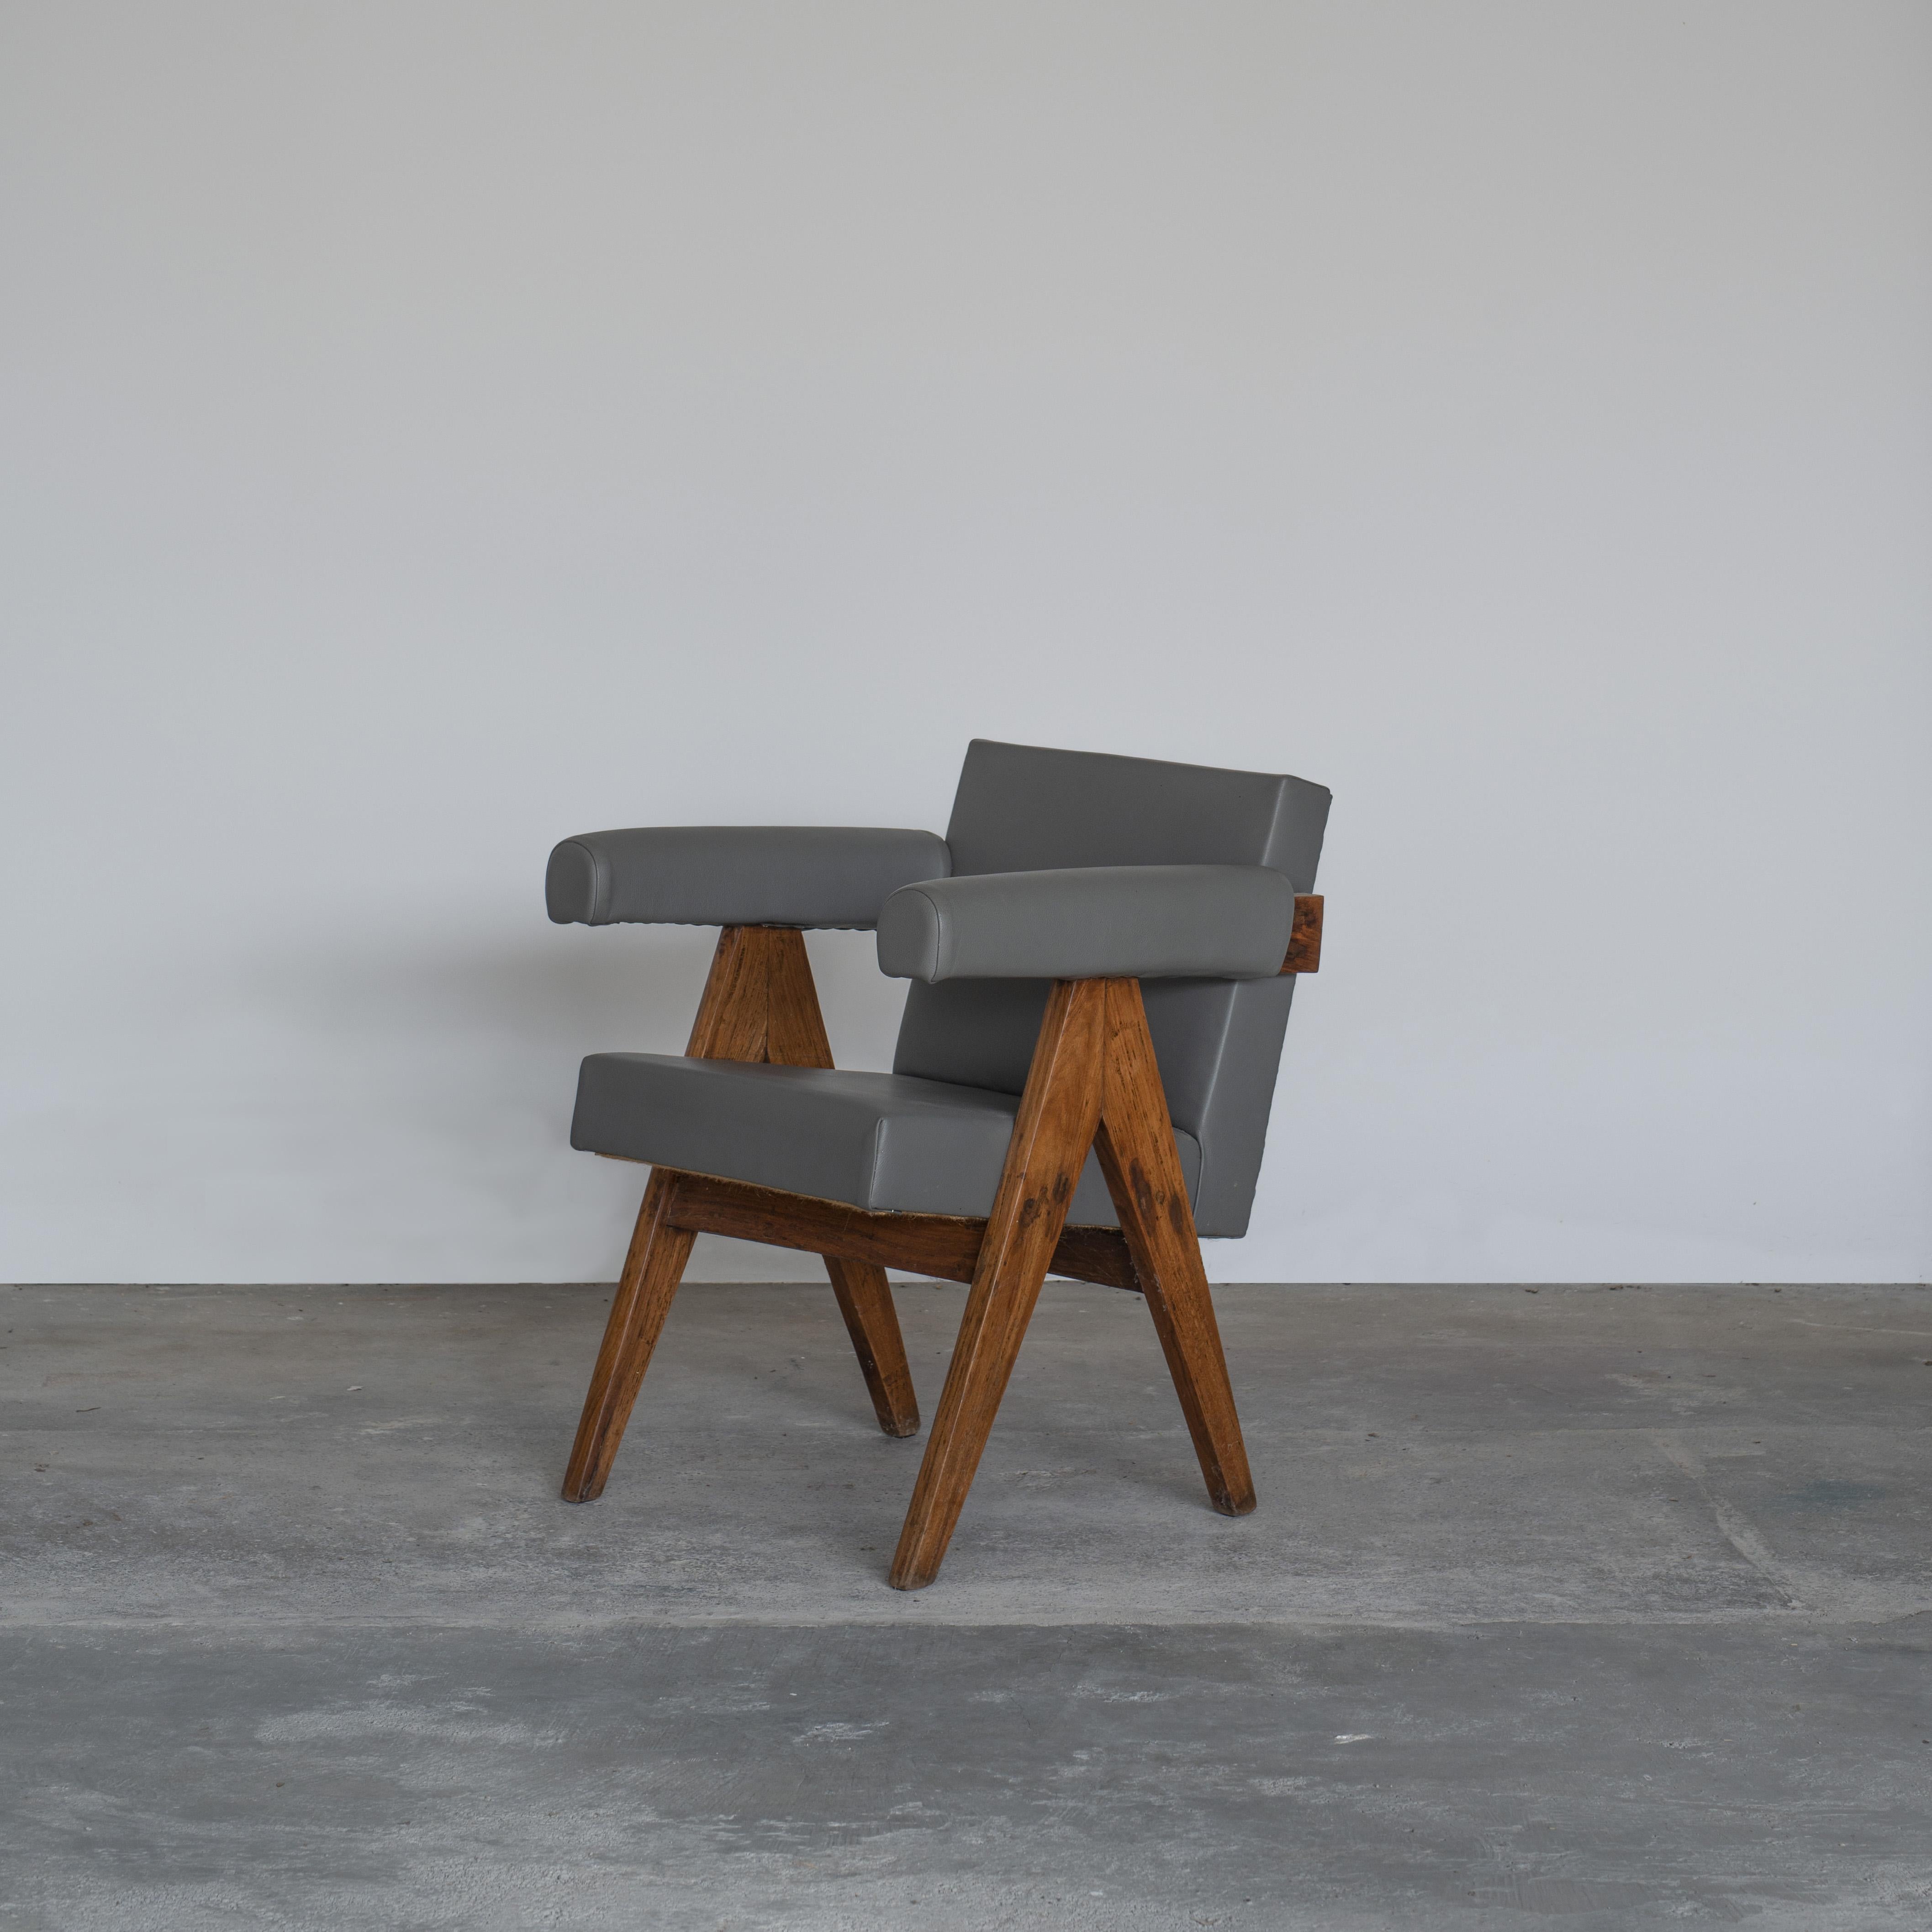 Dieser Stuhl mit seinem charakteristischen A-förmigen Profil ist ein seltener Klassiker der Geschichte. Durch seine raffinierten Proportionen und seine elegante Form repräsentiert der Stuhl die zeitlose Denkweise der modernistischen Architektur und